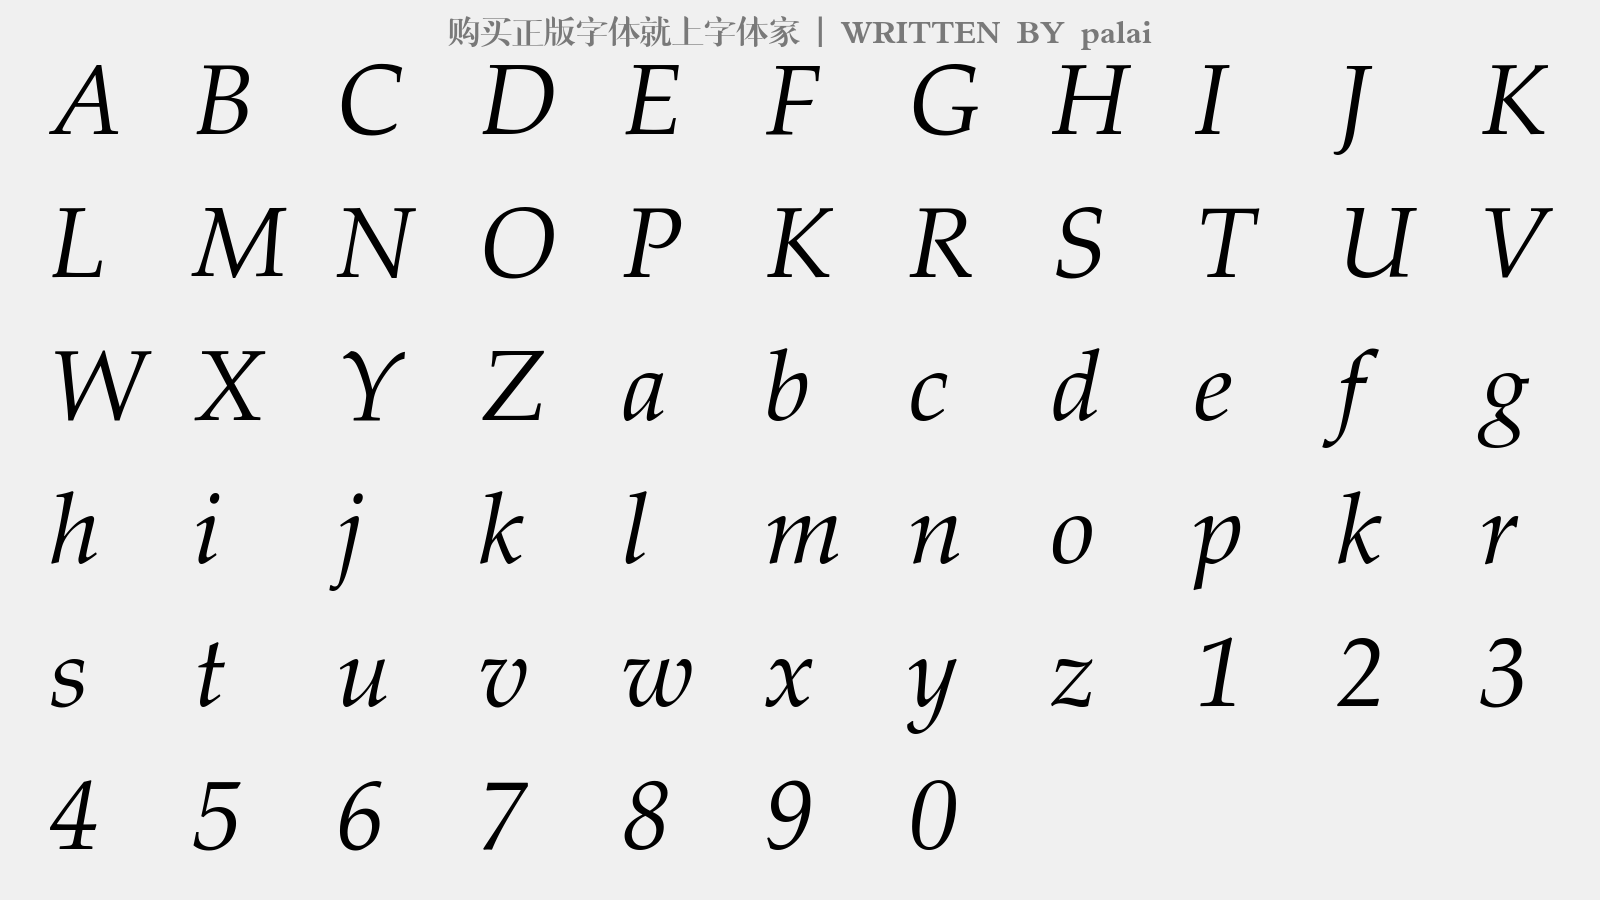 palai - 大写字母/小写字母/数字